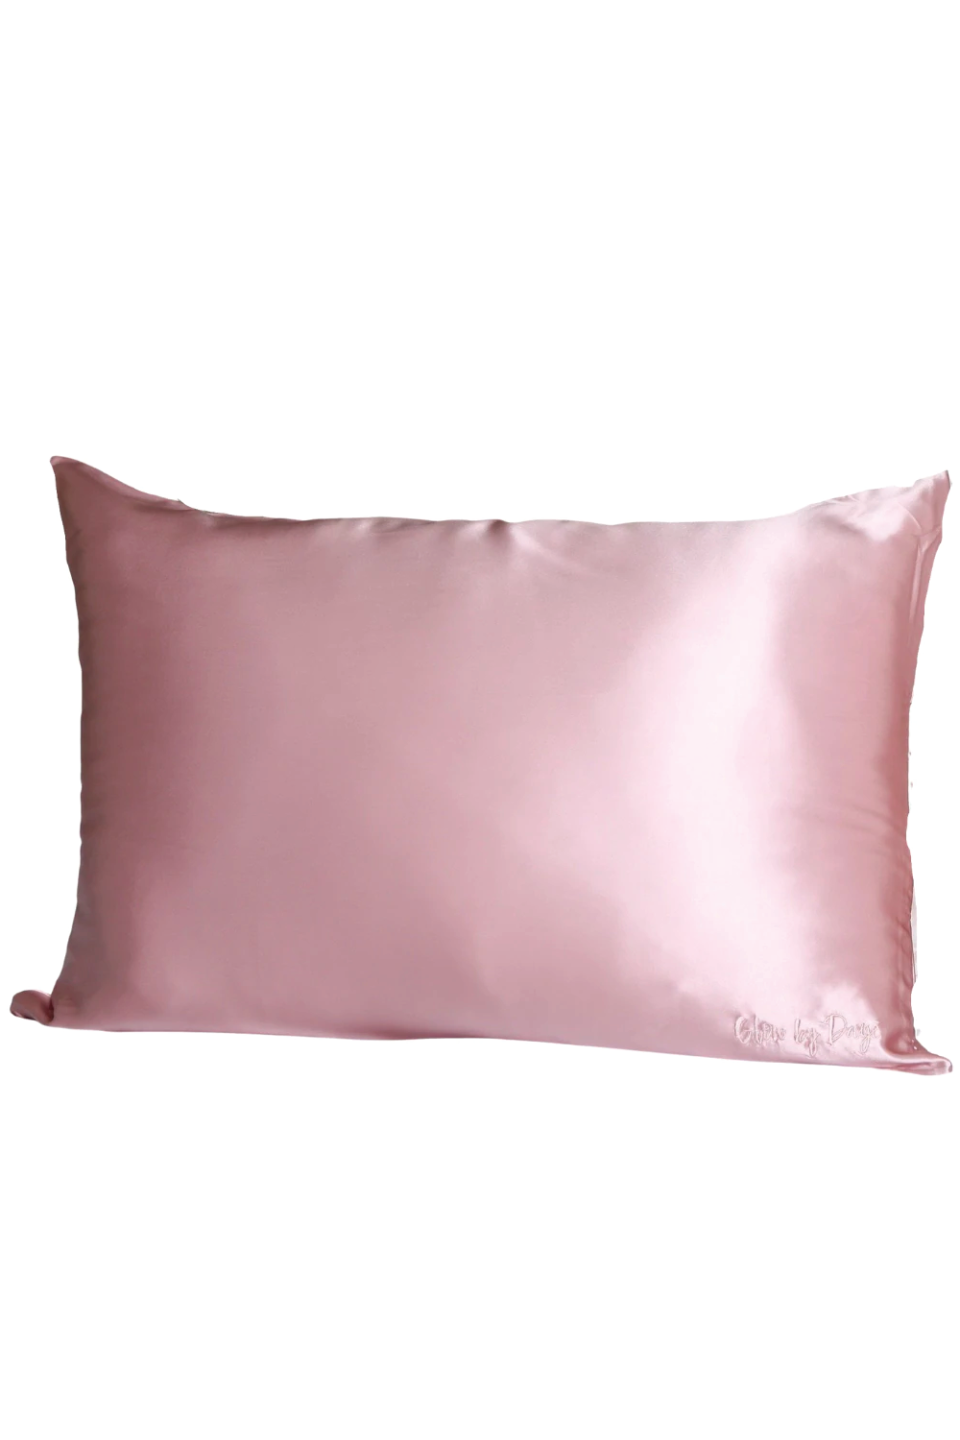 15) Glow by Daye Pink 100% Mulberry Silk DayeDream Pillowcase